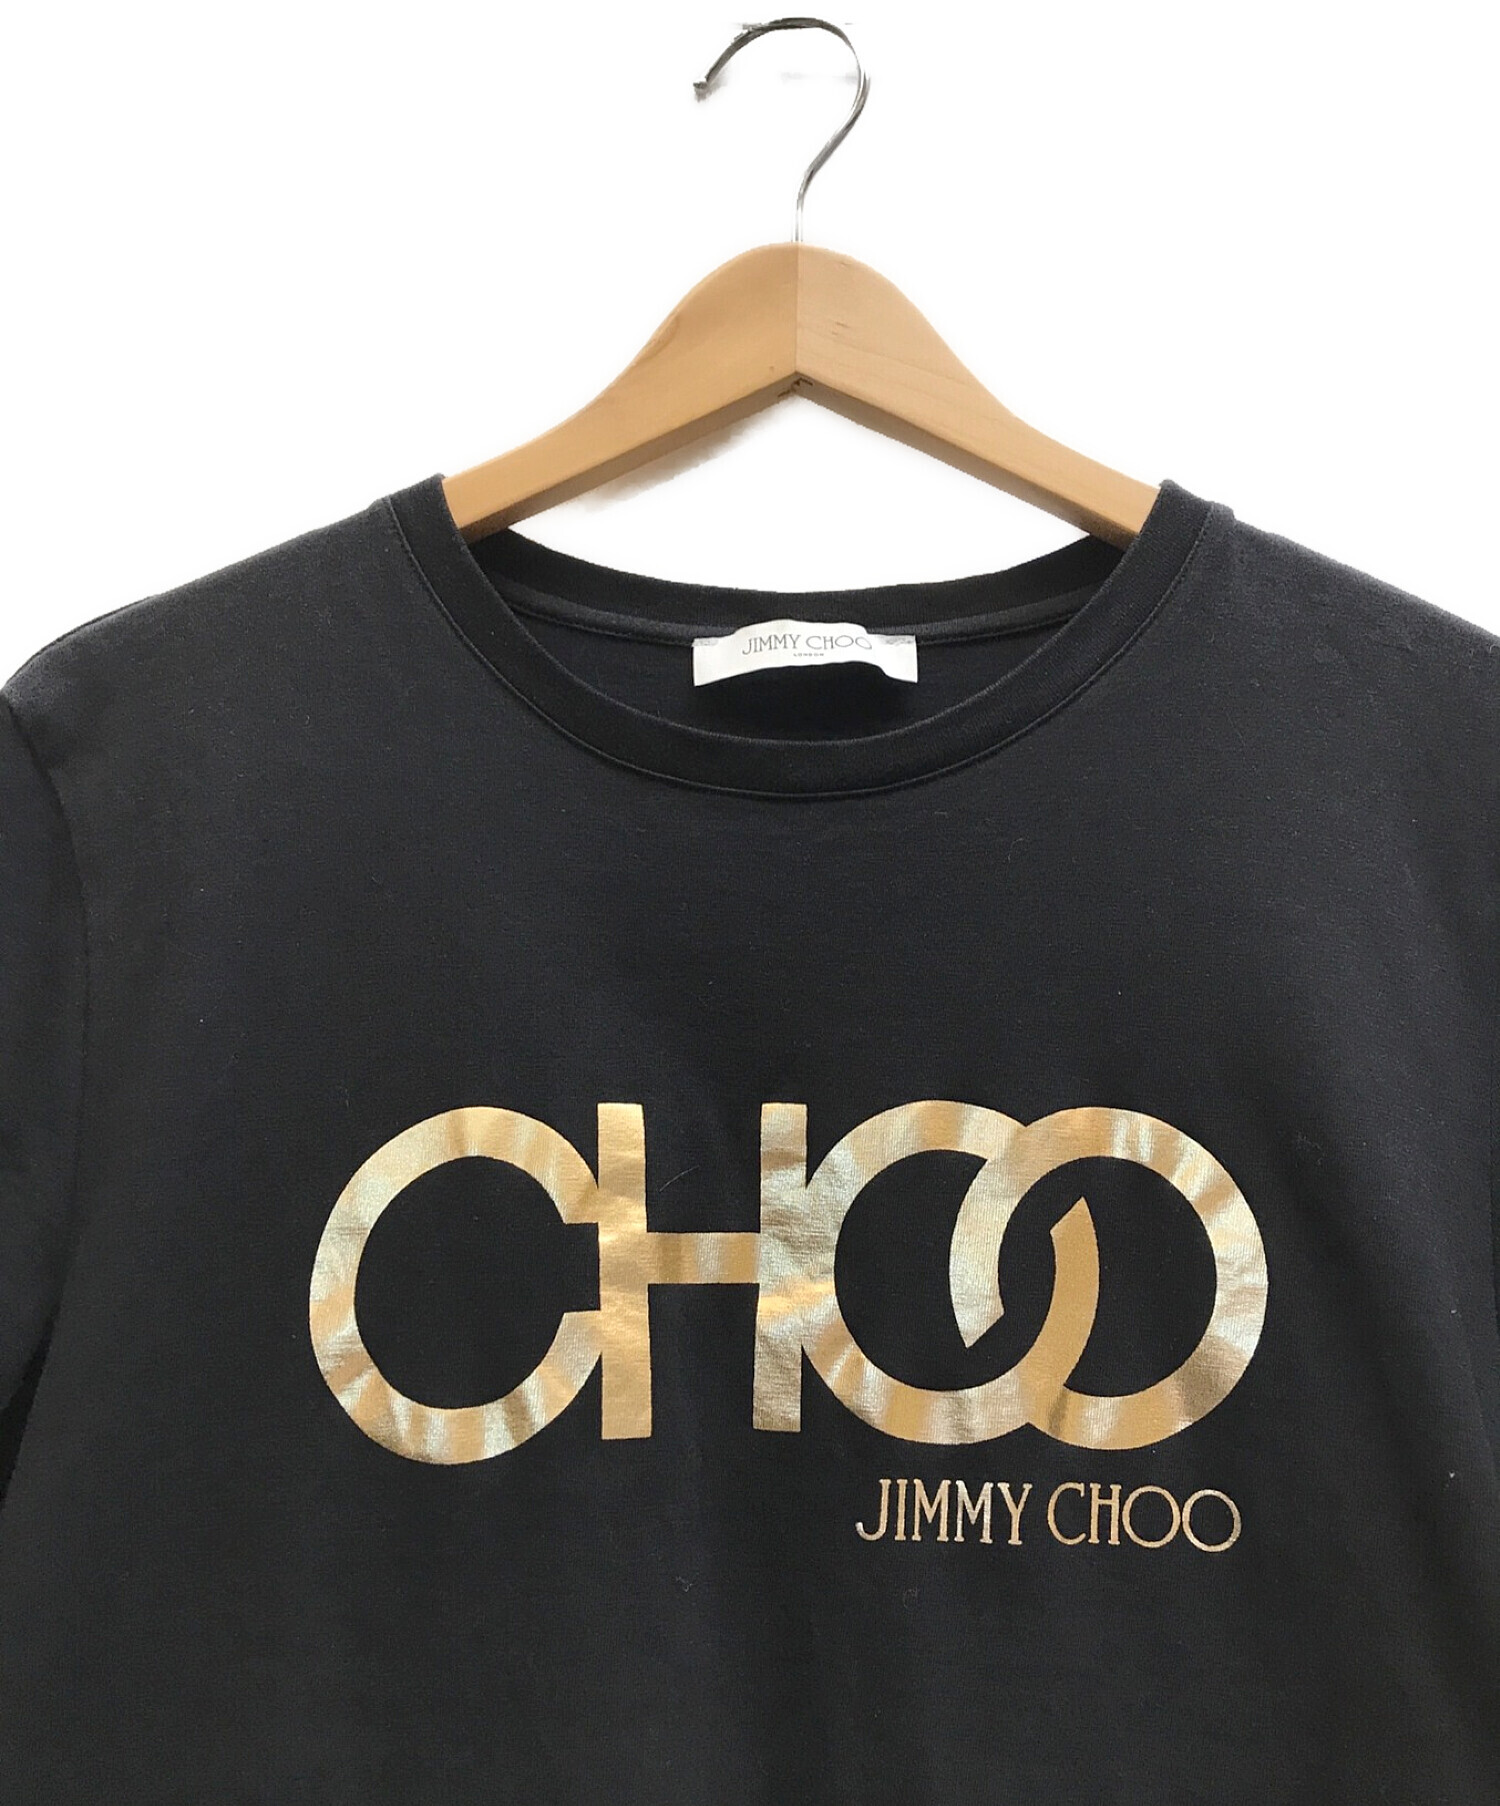 JIMMY CHOO (ジミーチュウ) ロゴプリントTシャツ ブラック×ゴールド サイズ:L